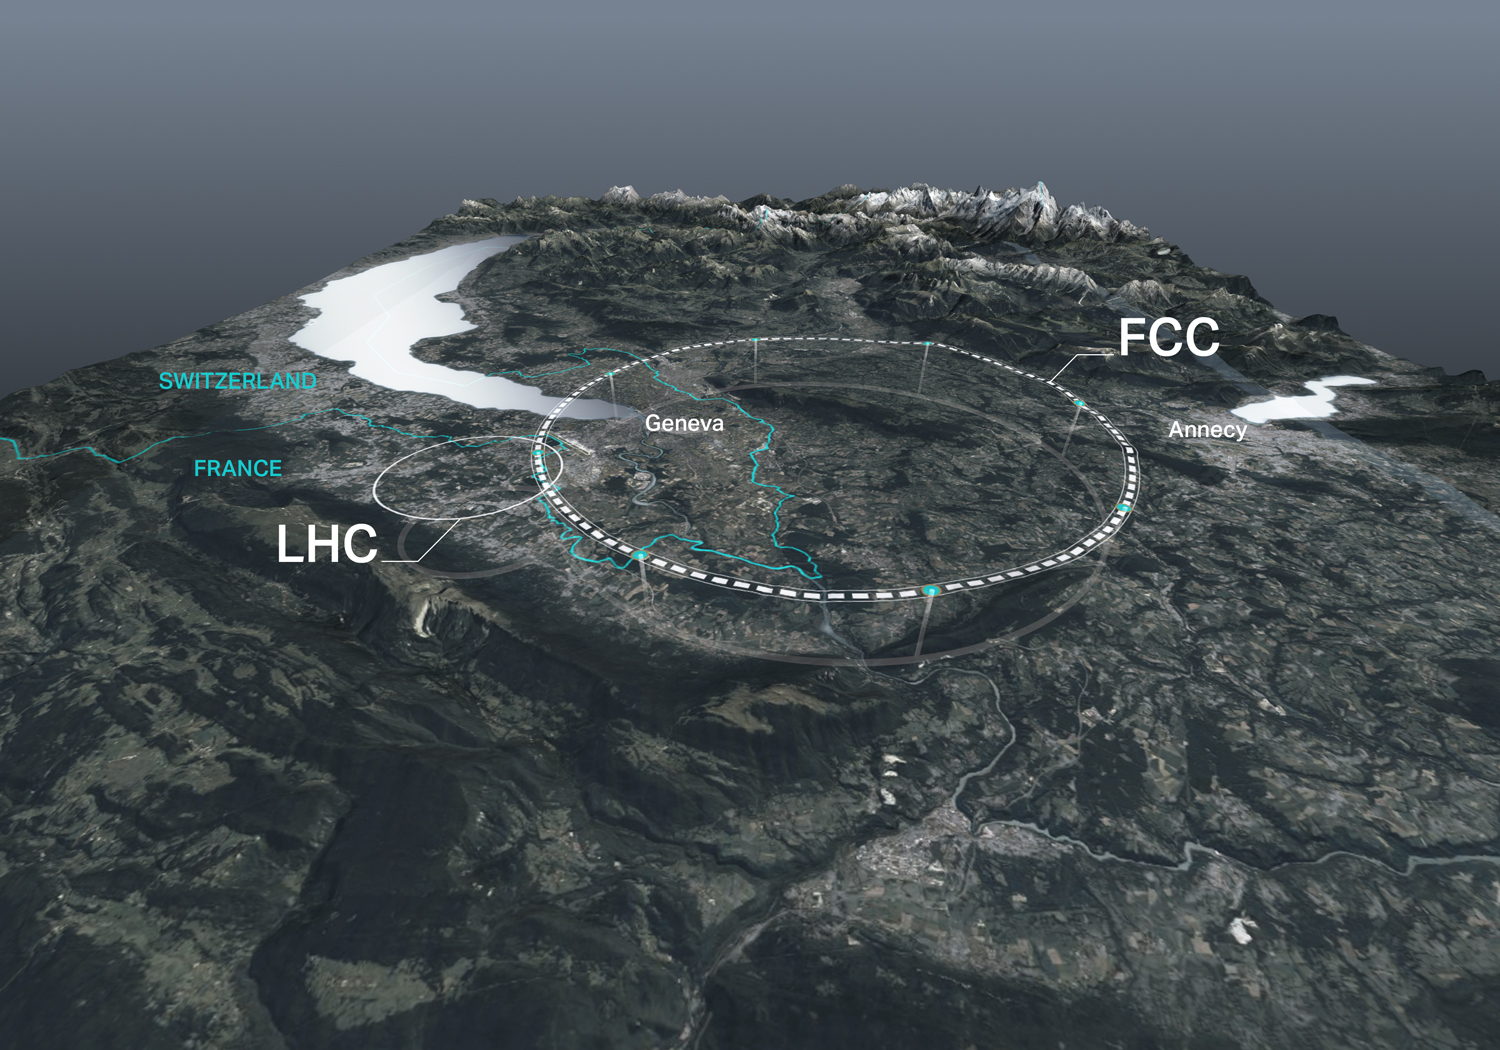 歐洲核子研究中心未來環形對撞機(FCC)的體積大約將比目前的大型強子對撞機(LHC)大三倍。